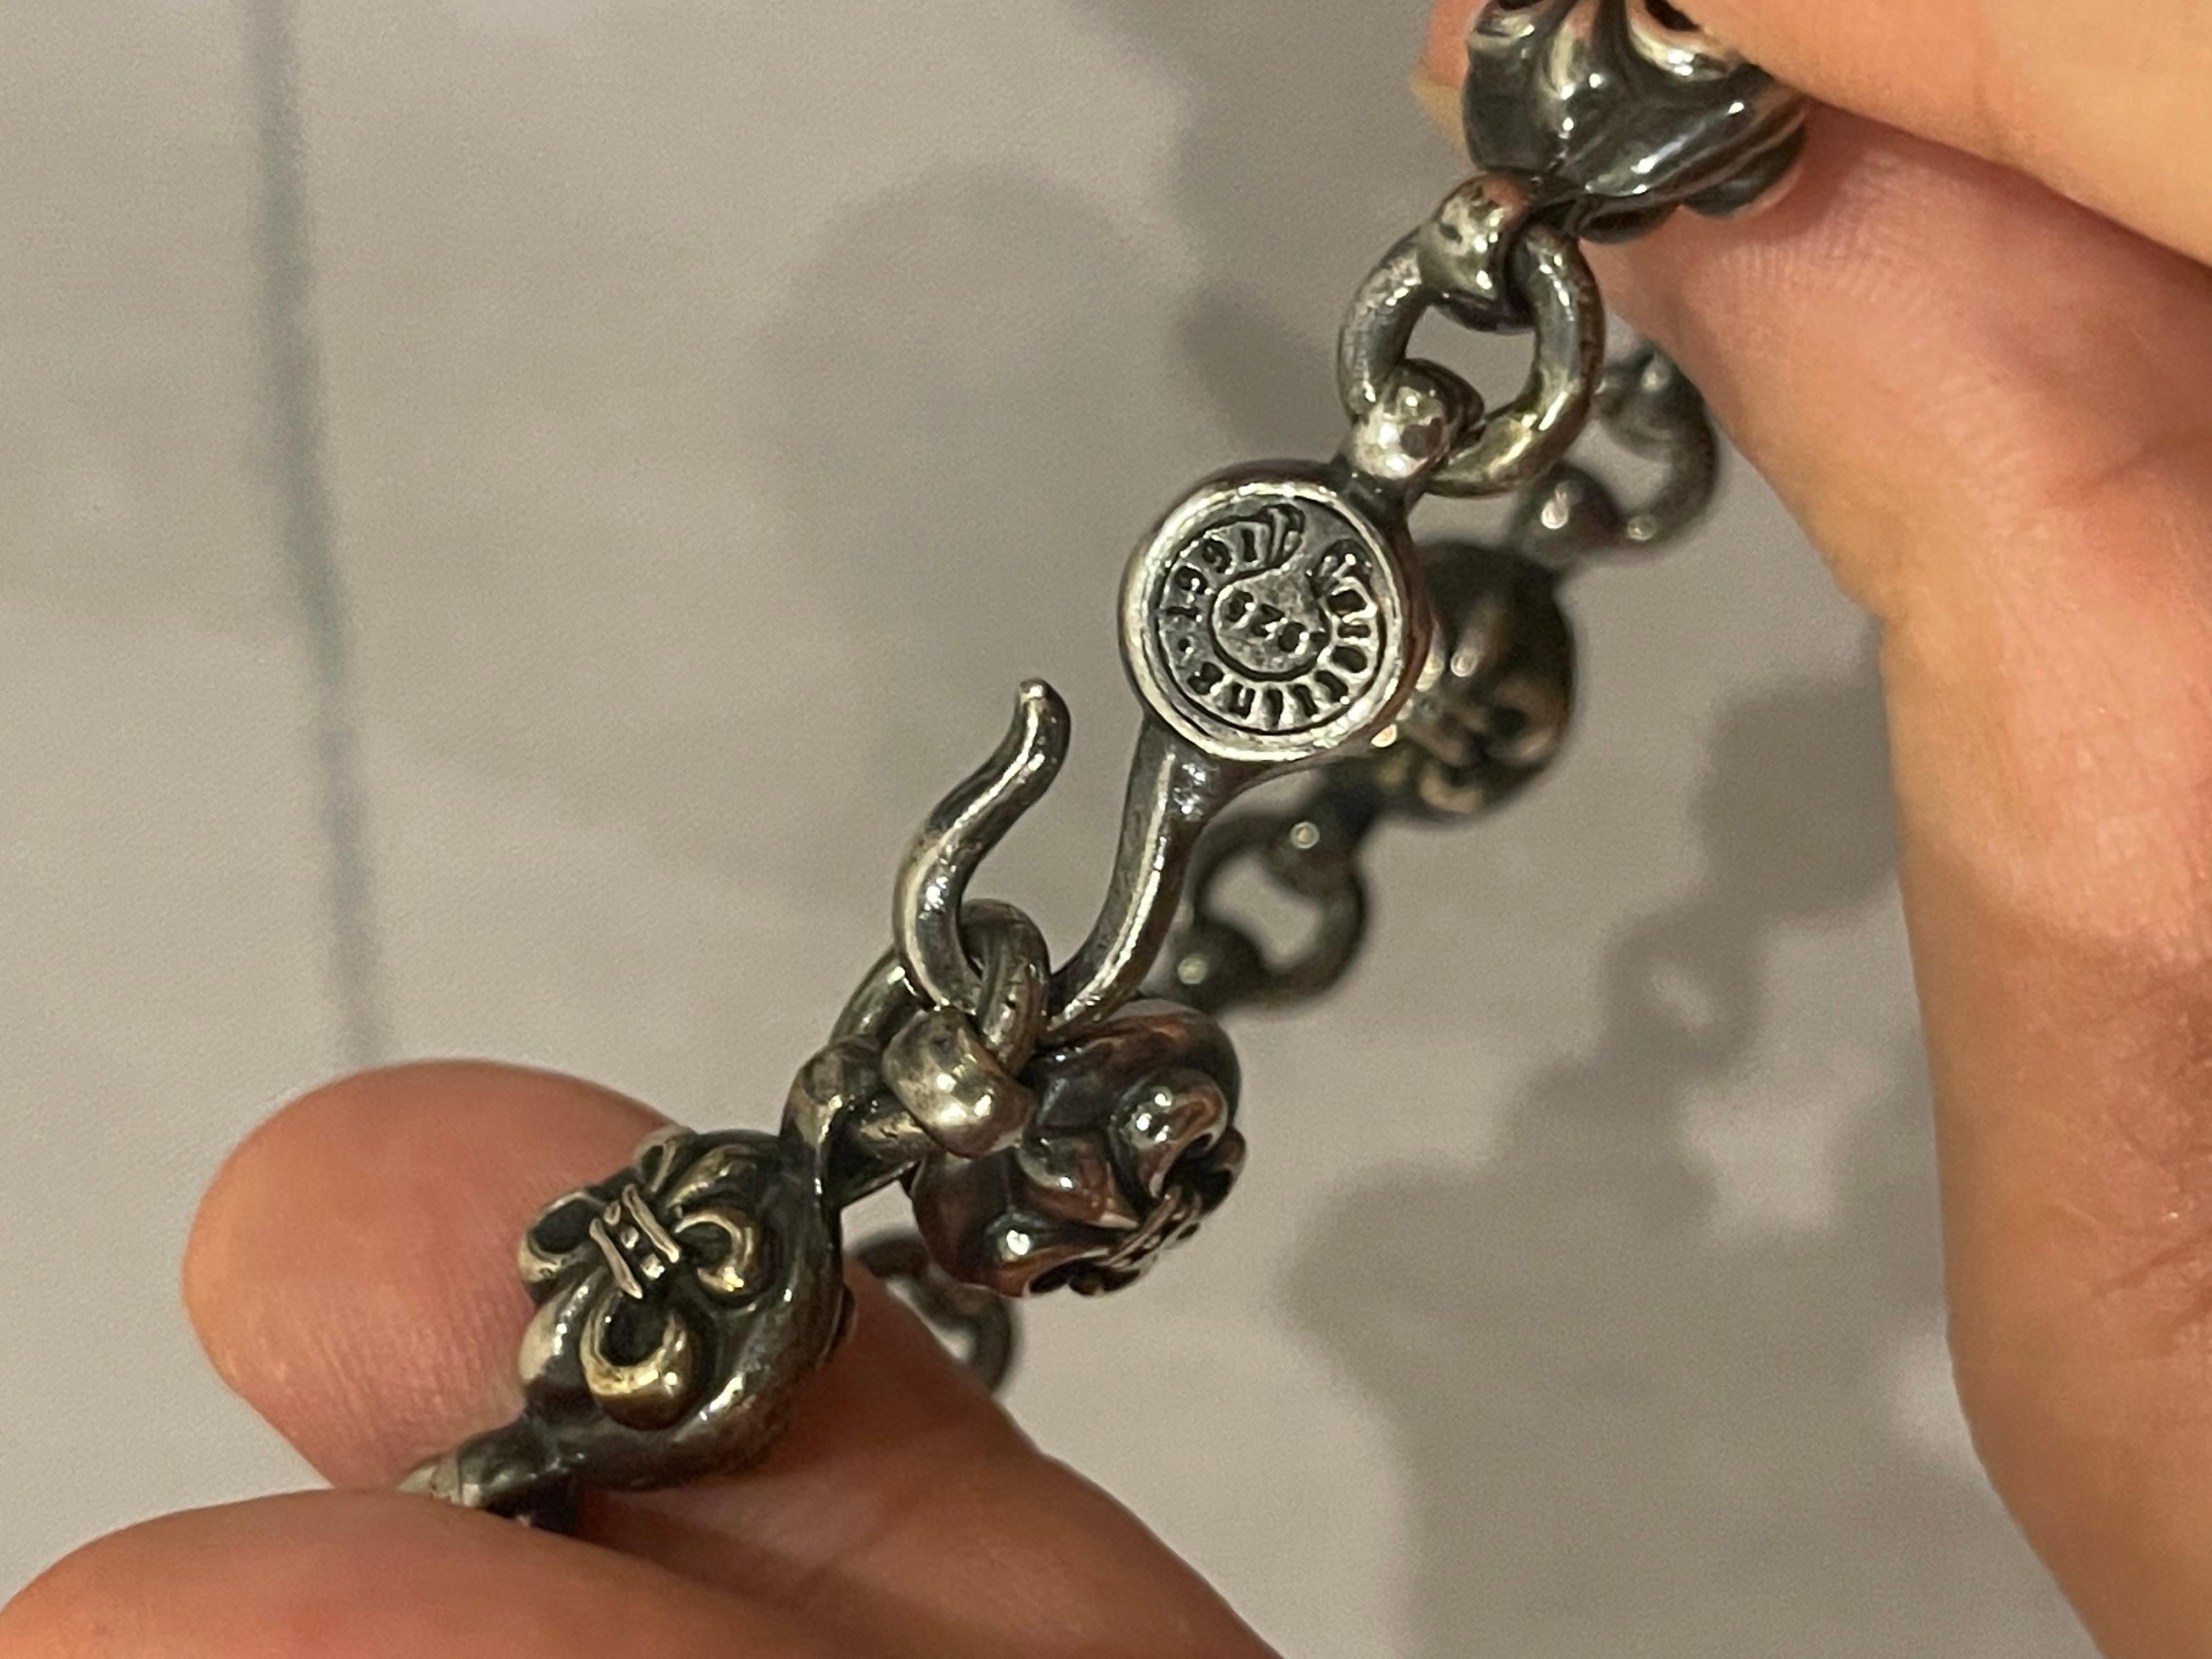 Seltene Sterling Silber Chrome Hearts Pastilles Kette Armband. Schöner Zustand, nur leichte Oxidation, die gereinigt werden kann. Einstellbare Größe entsprechend der Kettenschlaufe. Klassisches verchromtes Herzstück. Es kommt, wie es kommt. 